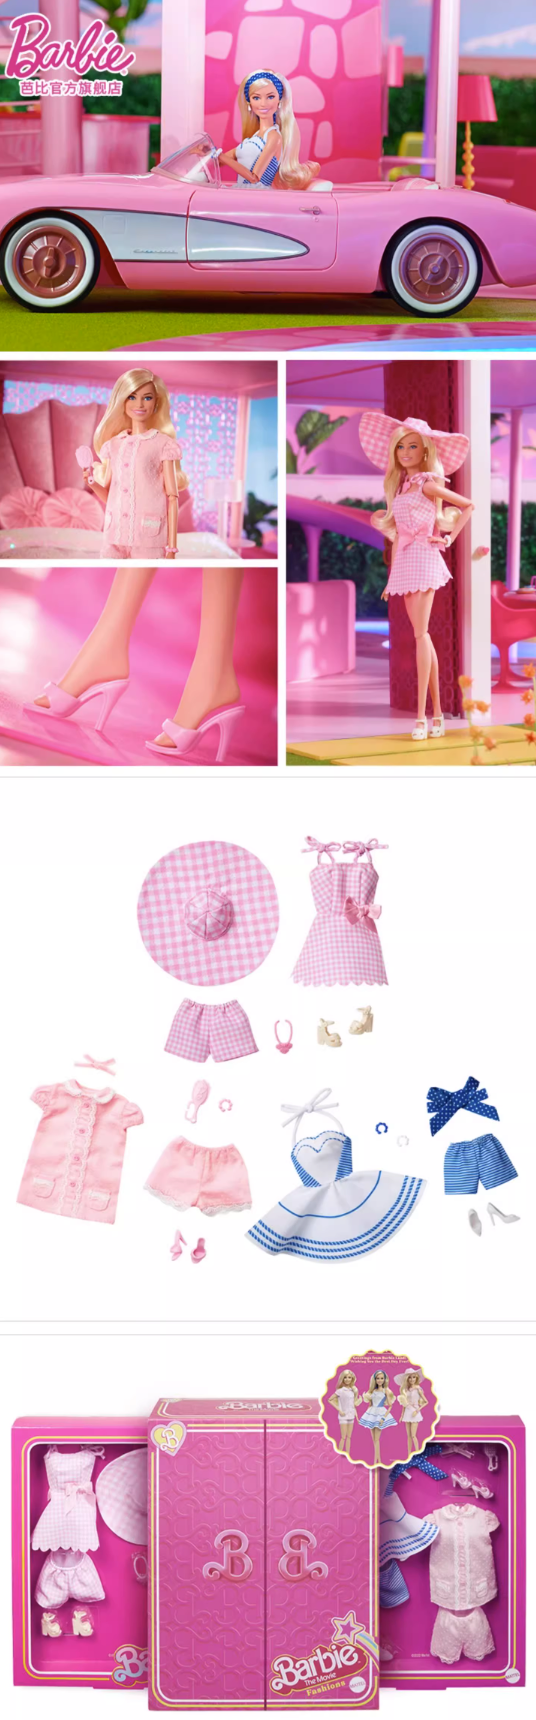 Barbie 芭比 【电影同款】真人电影时尚奢华套装 珍藏款